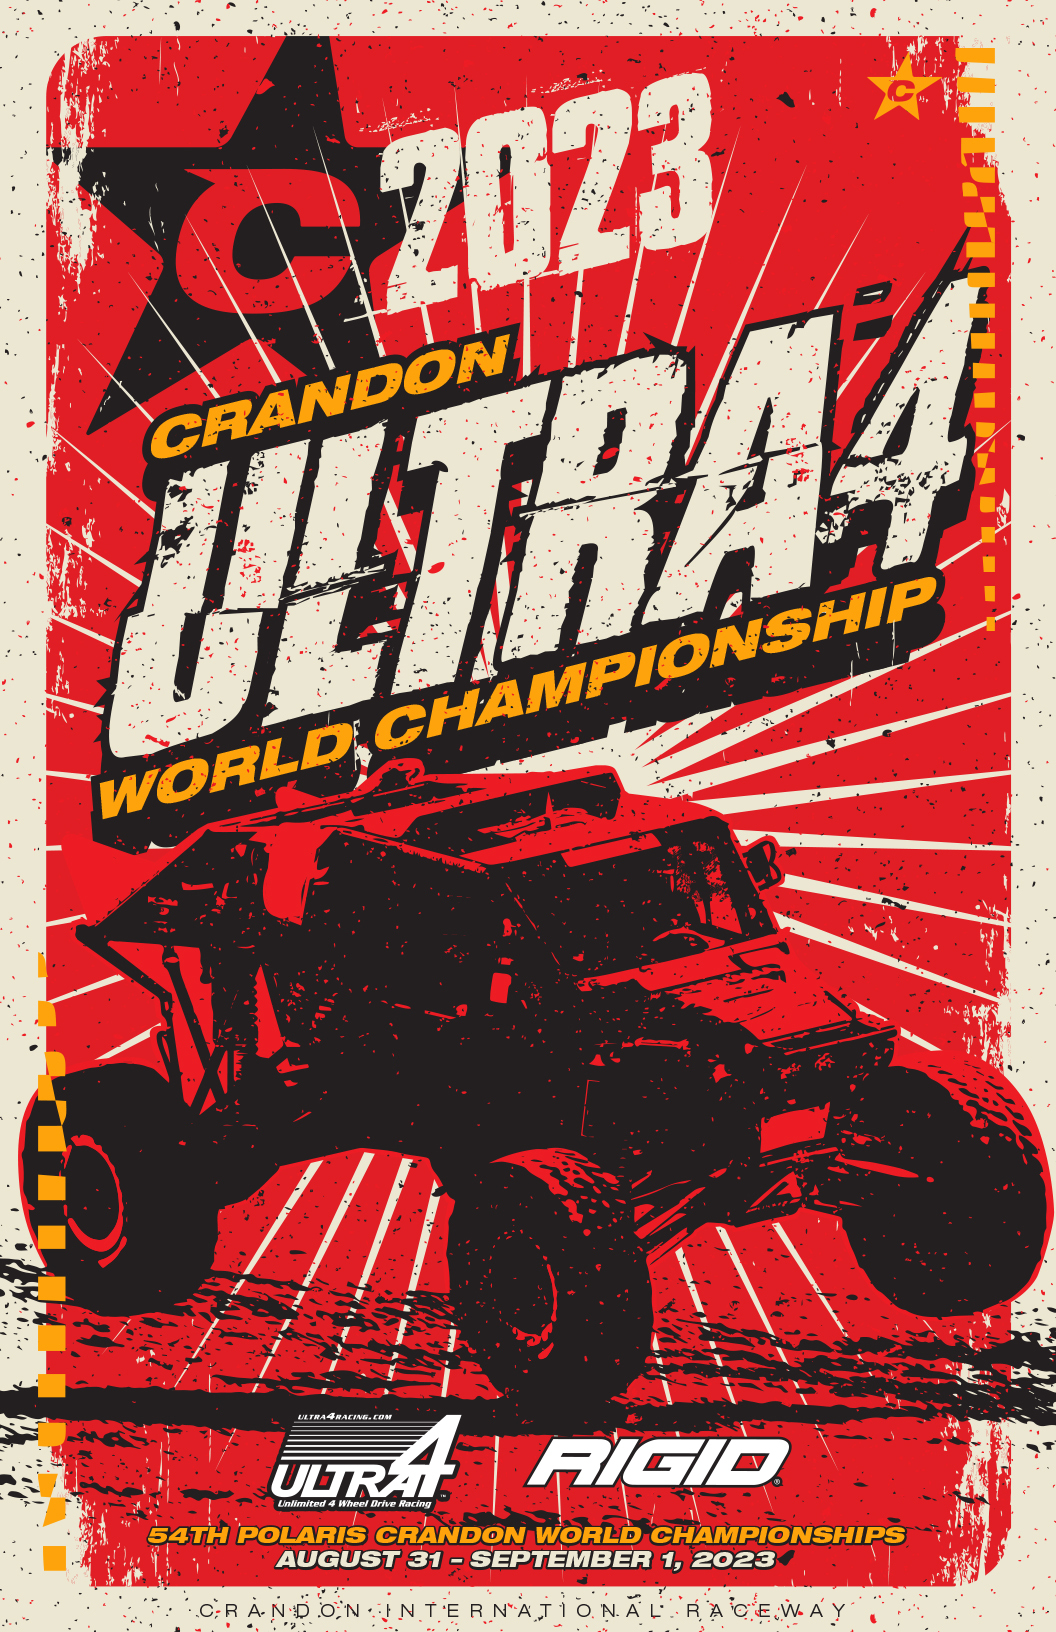 Ultra4 USA to race Crandon Short Course Racer Home of Short Course